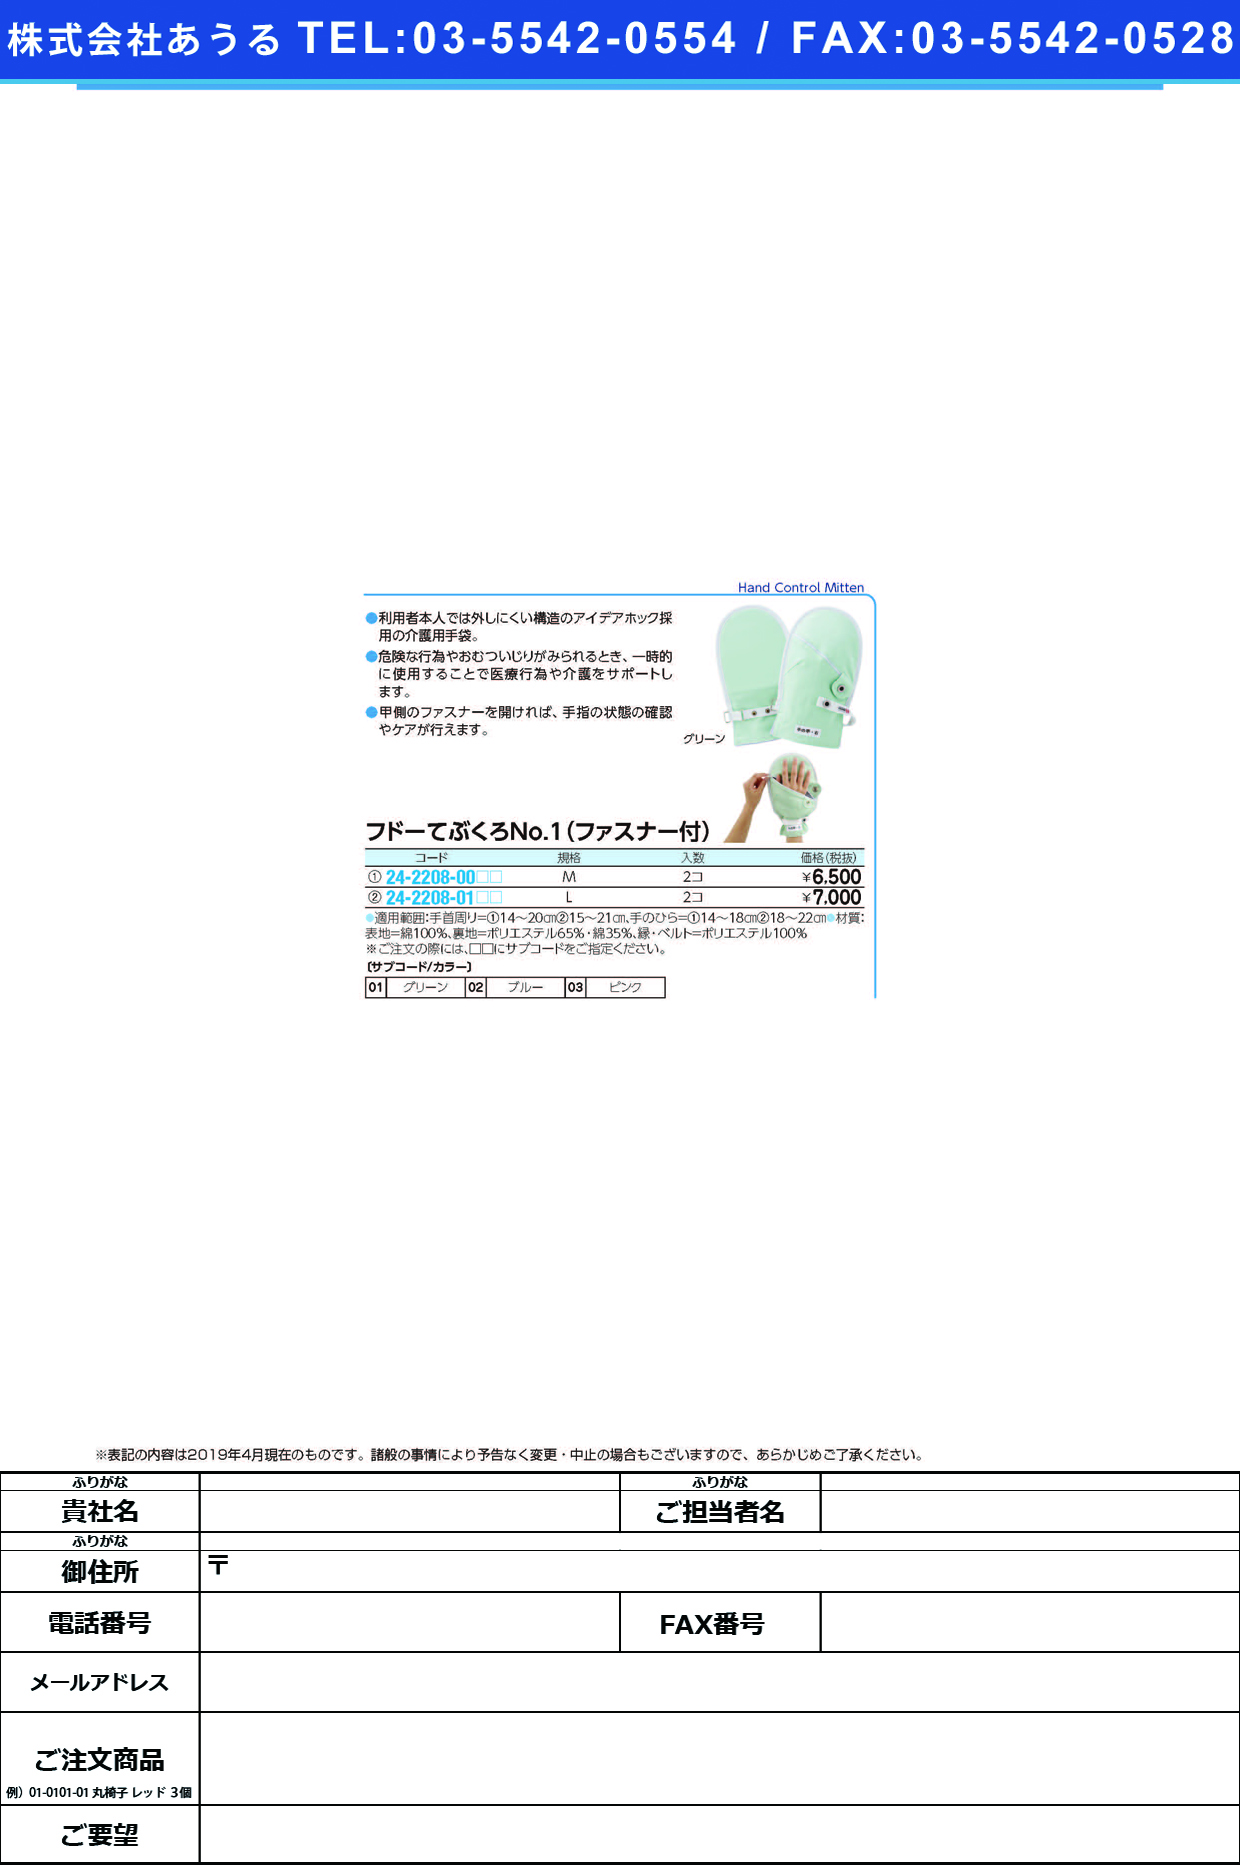 (24-2208-00)フドーてぶくろＮｏ．１ファスナー付 M(2ﾏｲｲﾘ) ﾌﾄﾞｰﾃﾌﾞｸﾛNO1ﾌｧｽﾅｰﾂｷ グリーン【1双単位】【2019年カタログ商品】